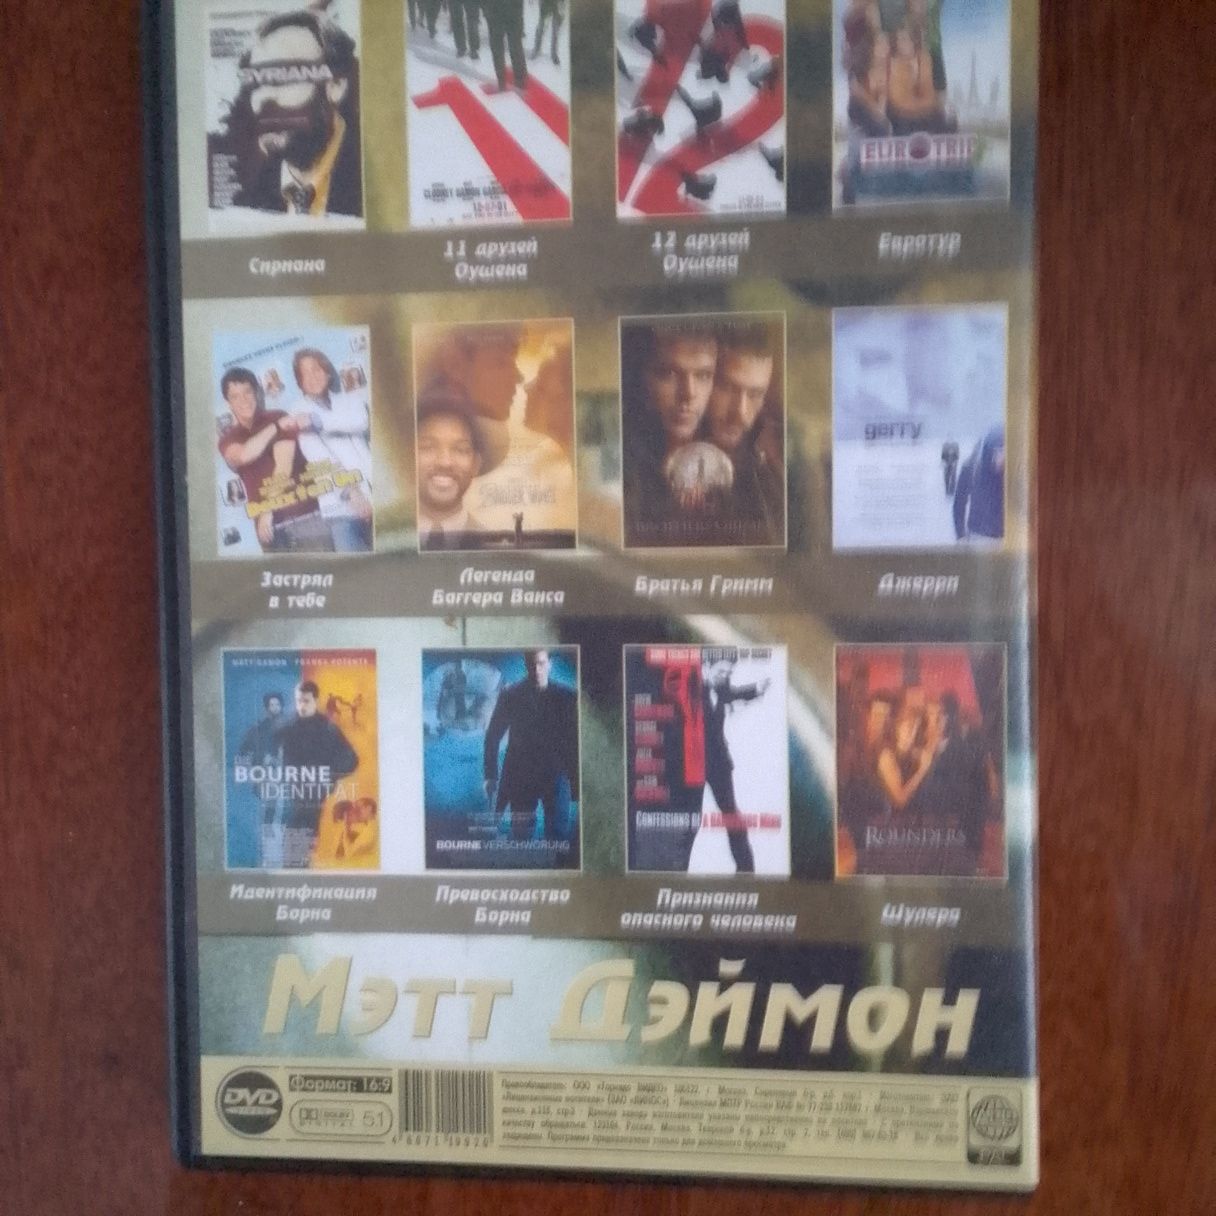 Двд диск "Мэтт Деймон", коллекция фильмов.